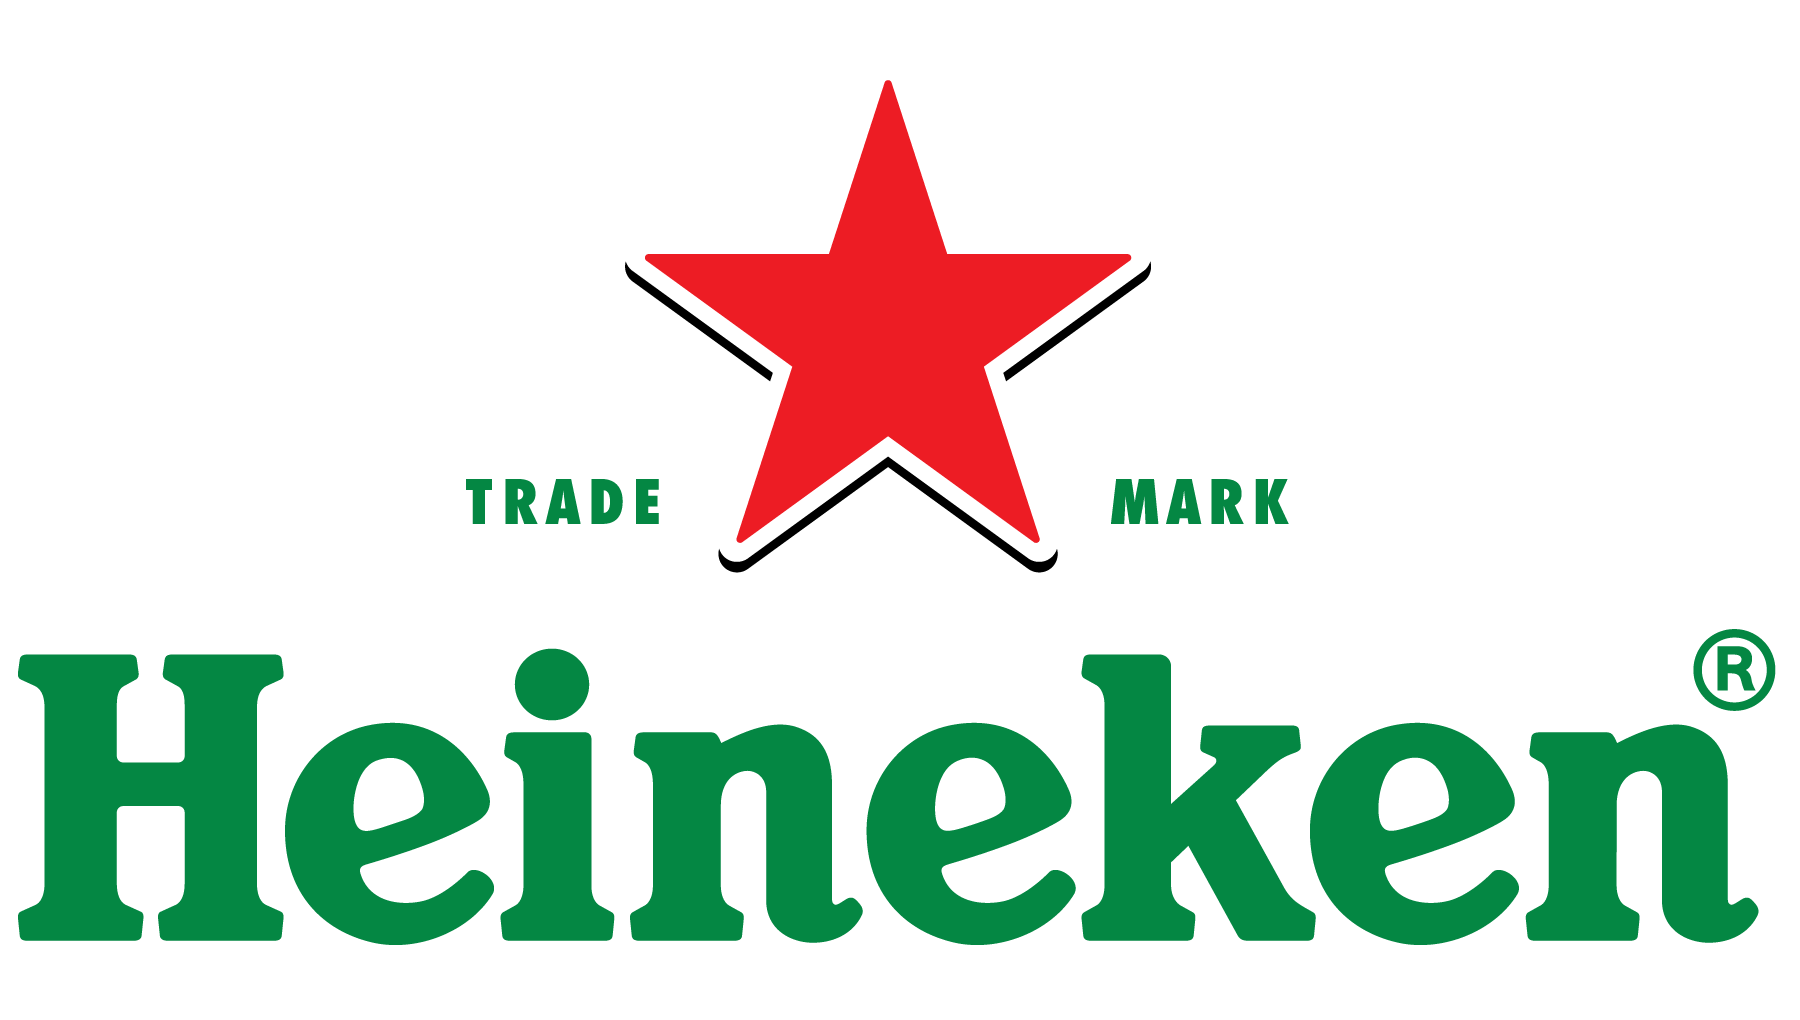 Heineken Logo PNG Clipart